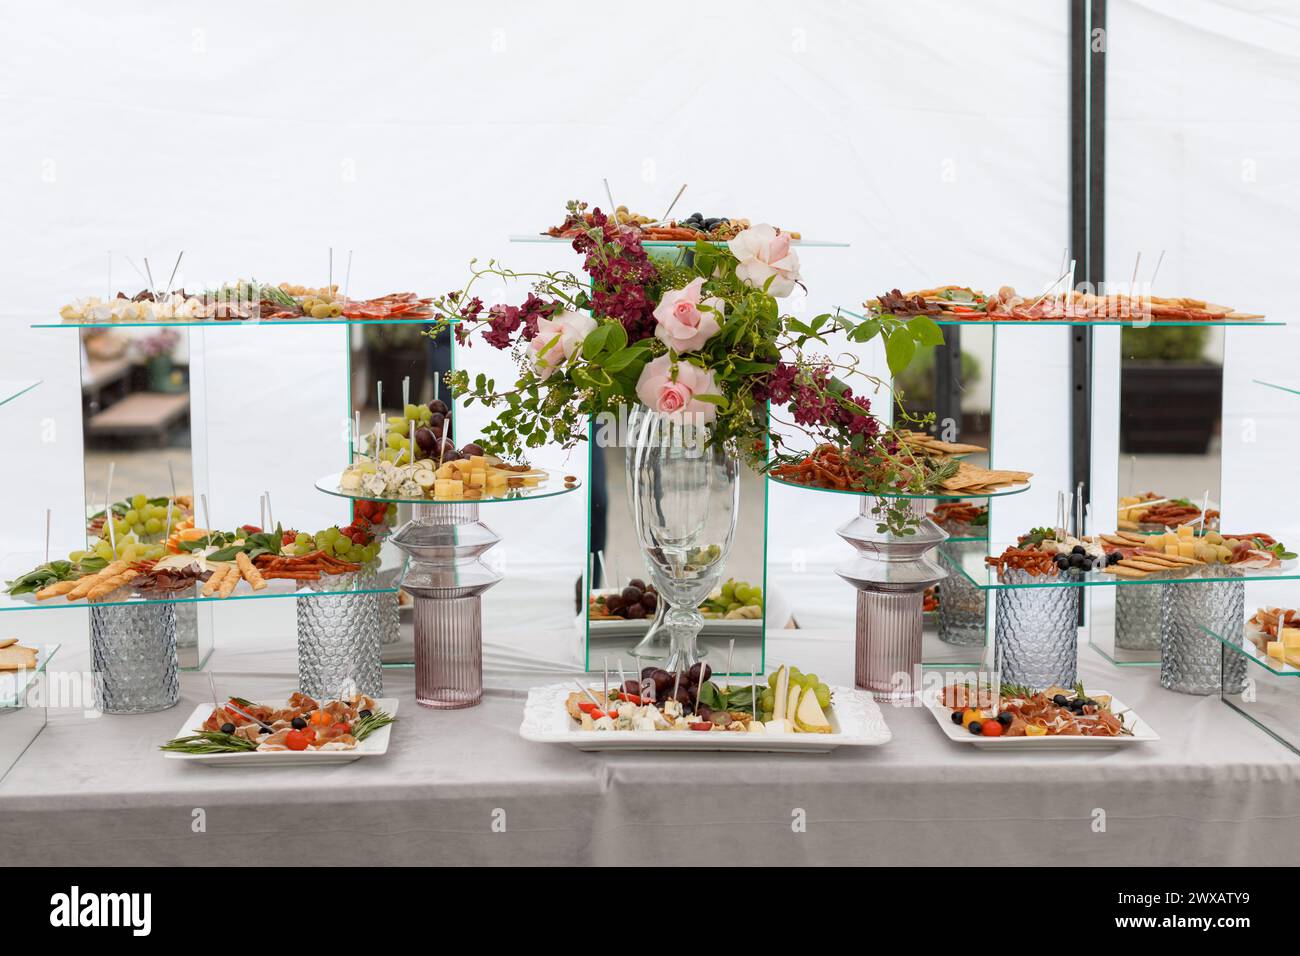 Ein Tisch, der mit einer Auswahl verschiedener Arten von Speisen bedeckt ist, von Obst und Gemüse bis hin zu Fleisch und Gebäck, was eine farbenfrohe und appetitliche Atmosphäre schafft Stockfoto